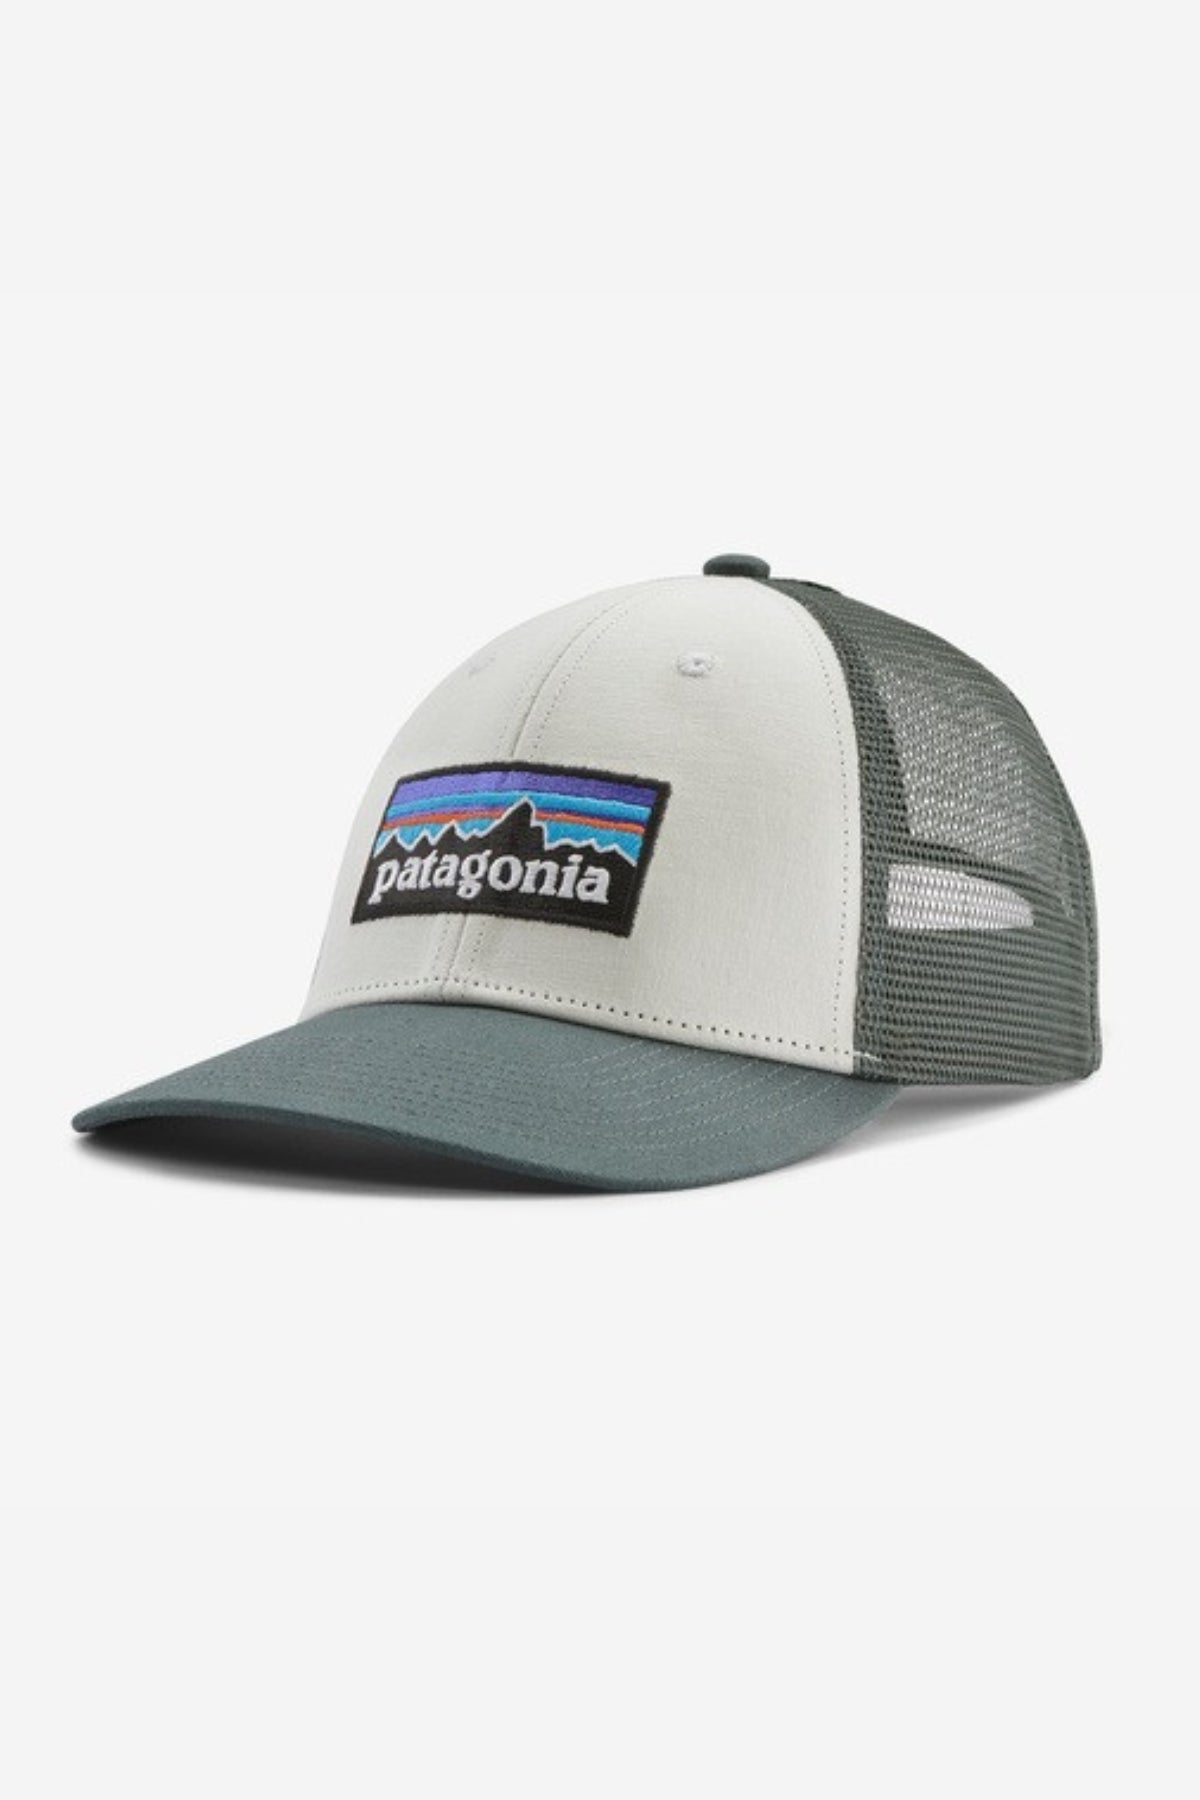 P-6 Logo LoPro Trucker Hat - Patagonia